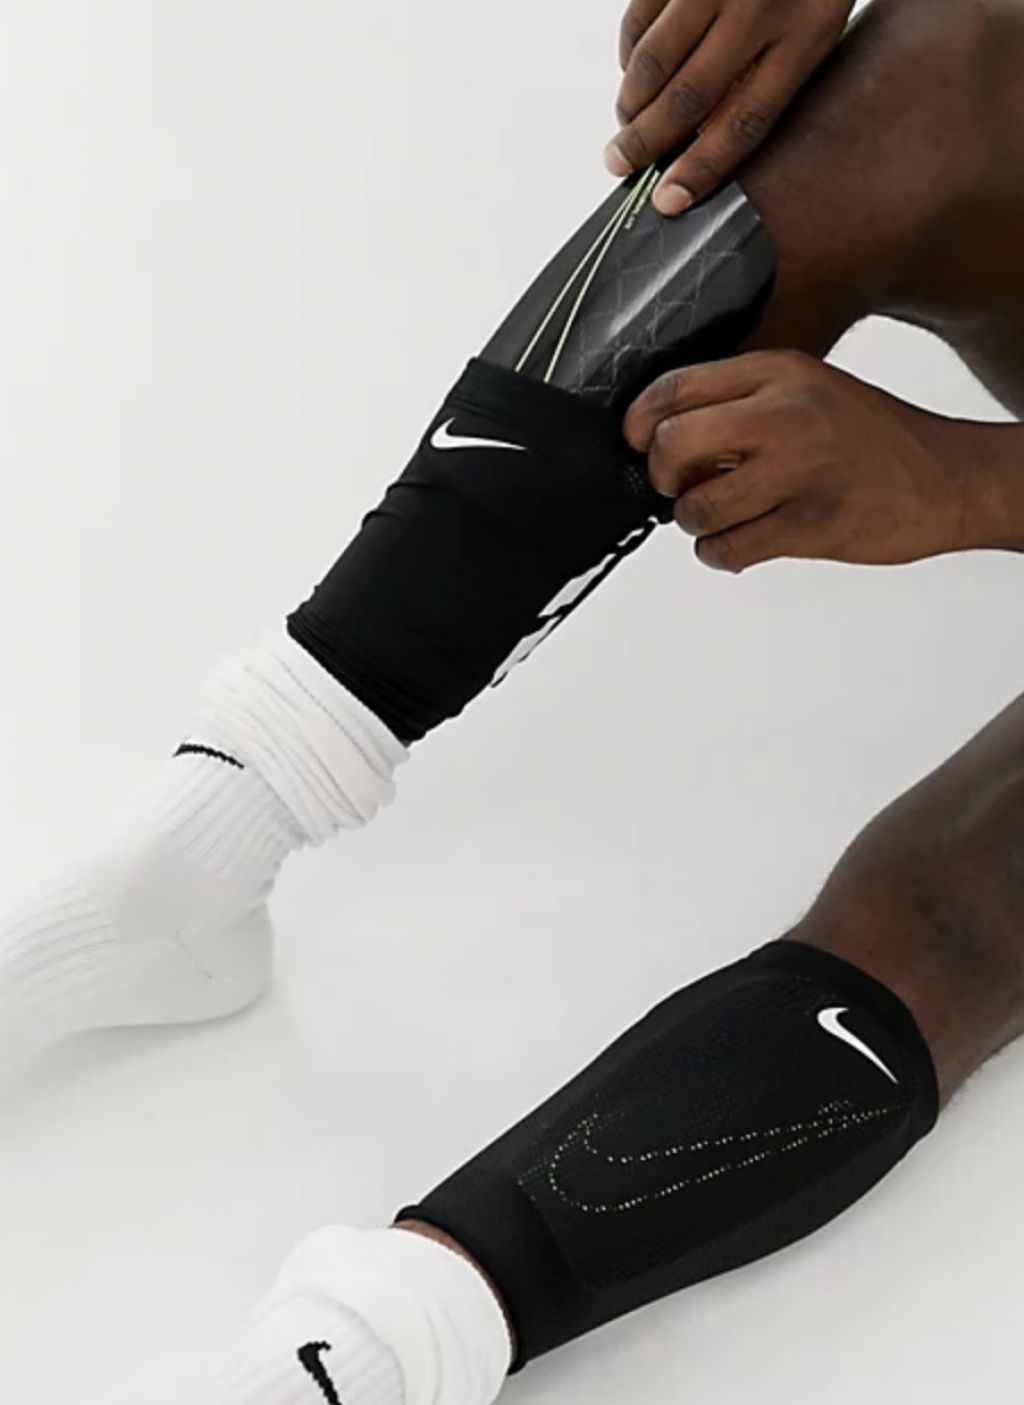 Nike Guard Look Elite Sleeve/резинки для щитков